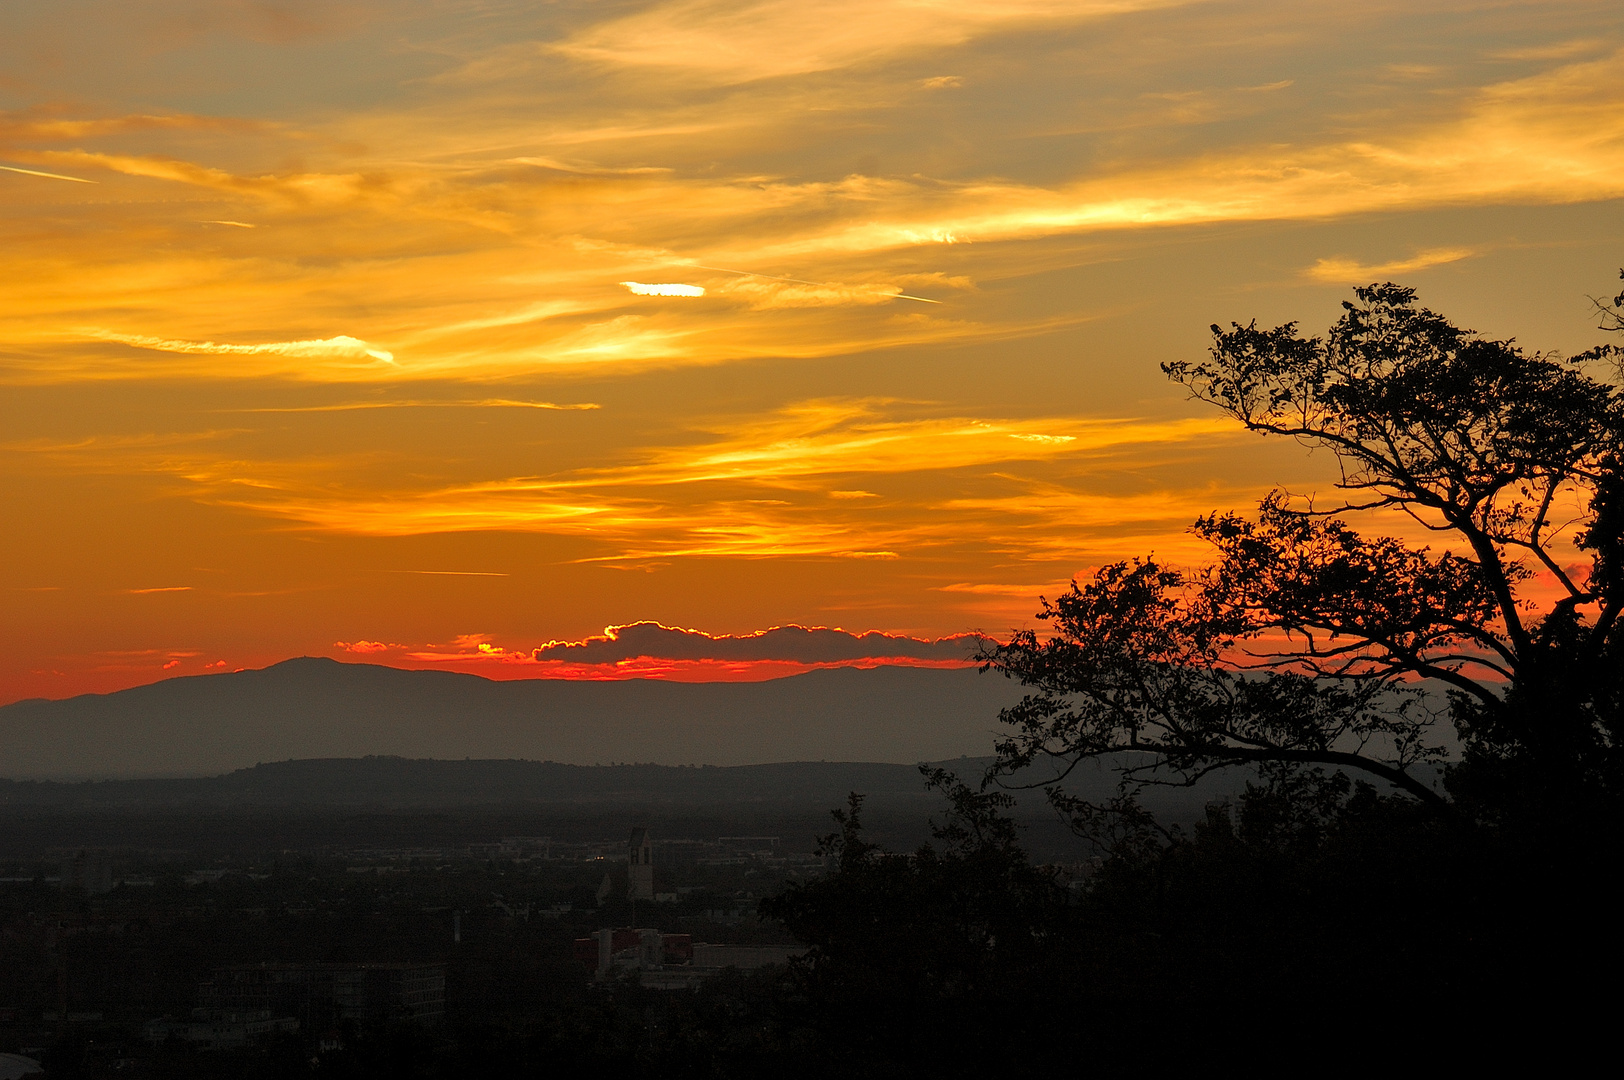 Sonnenuntergang über Freiburg